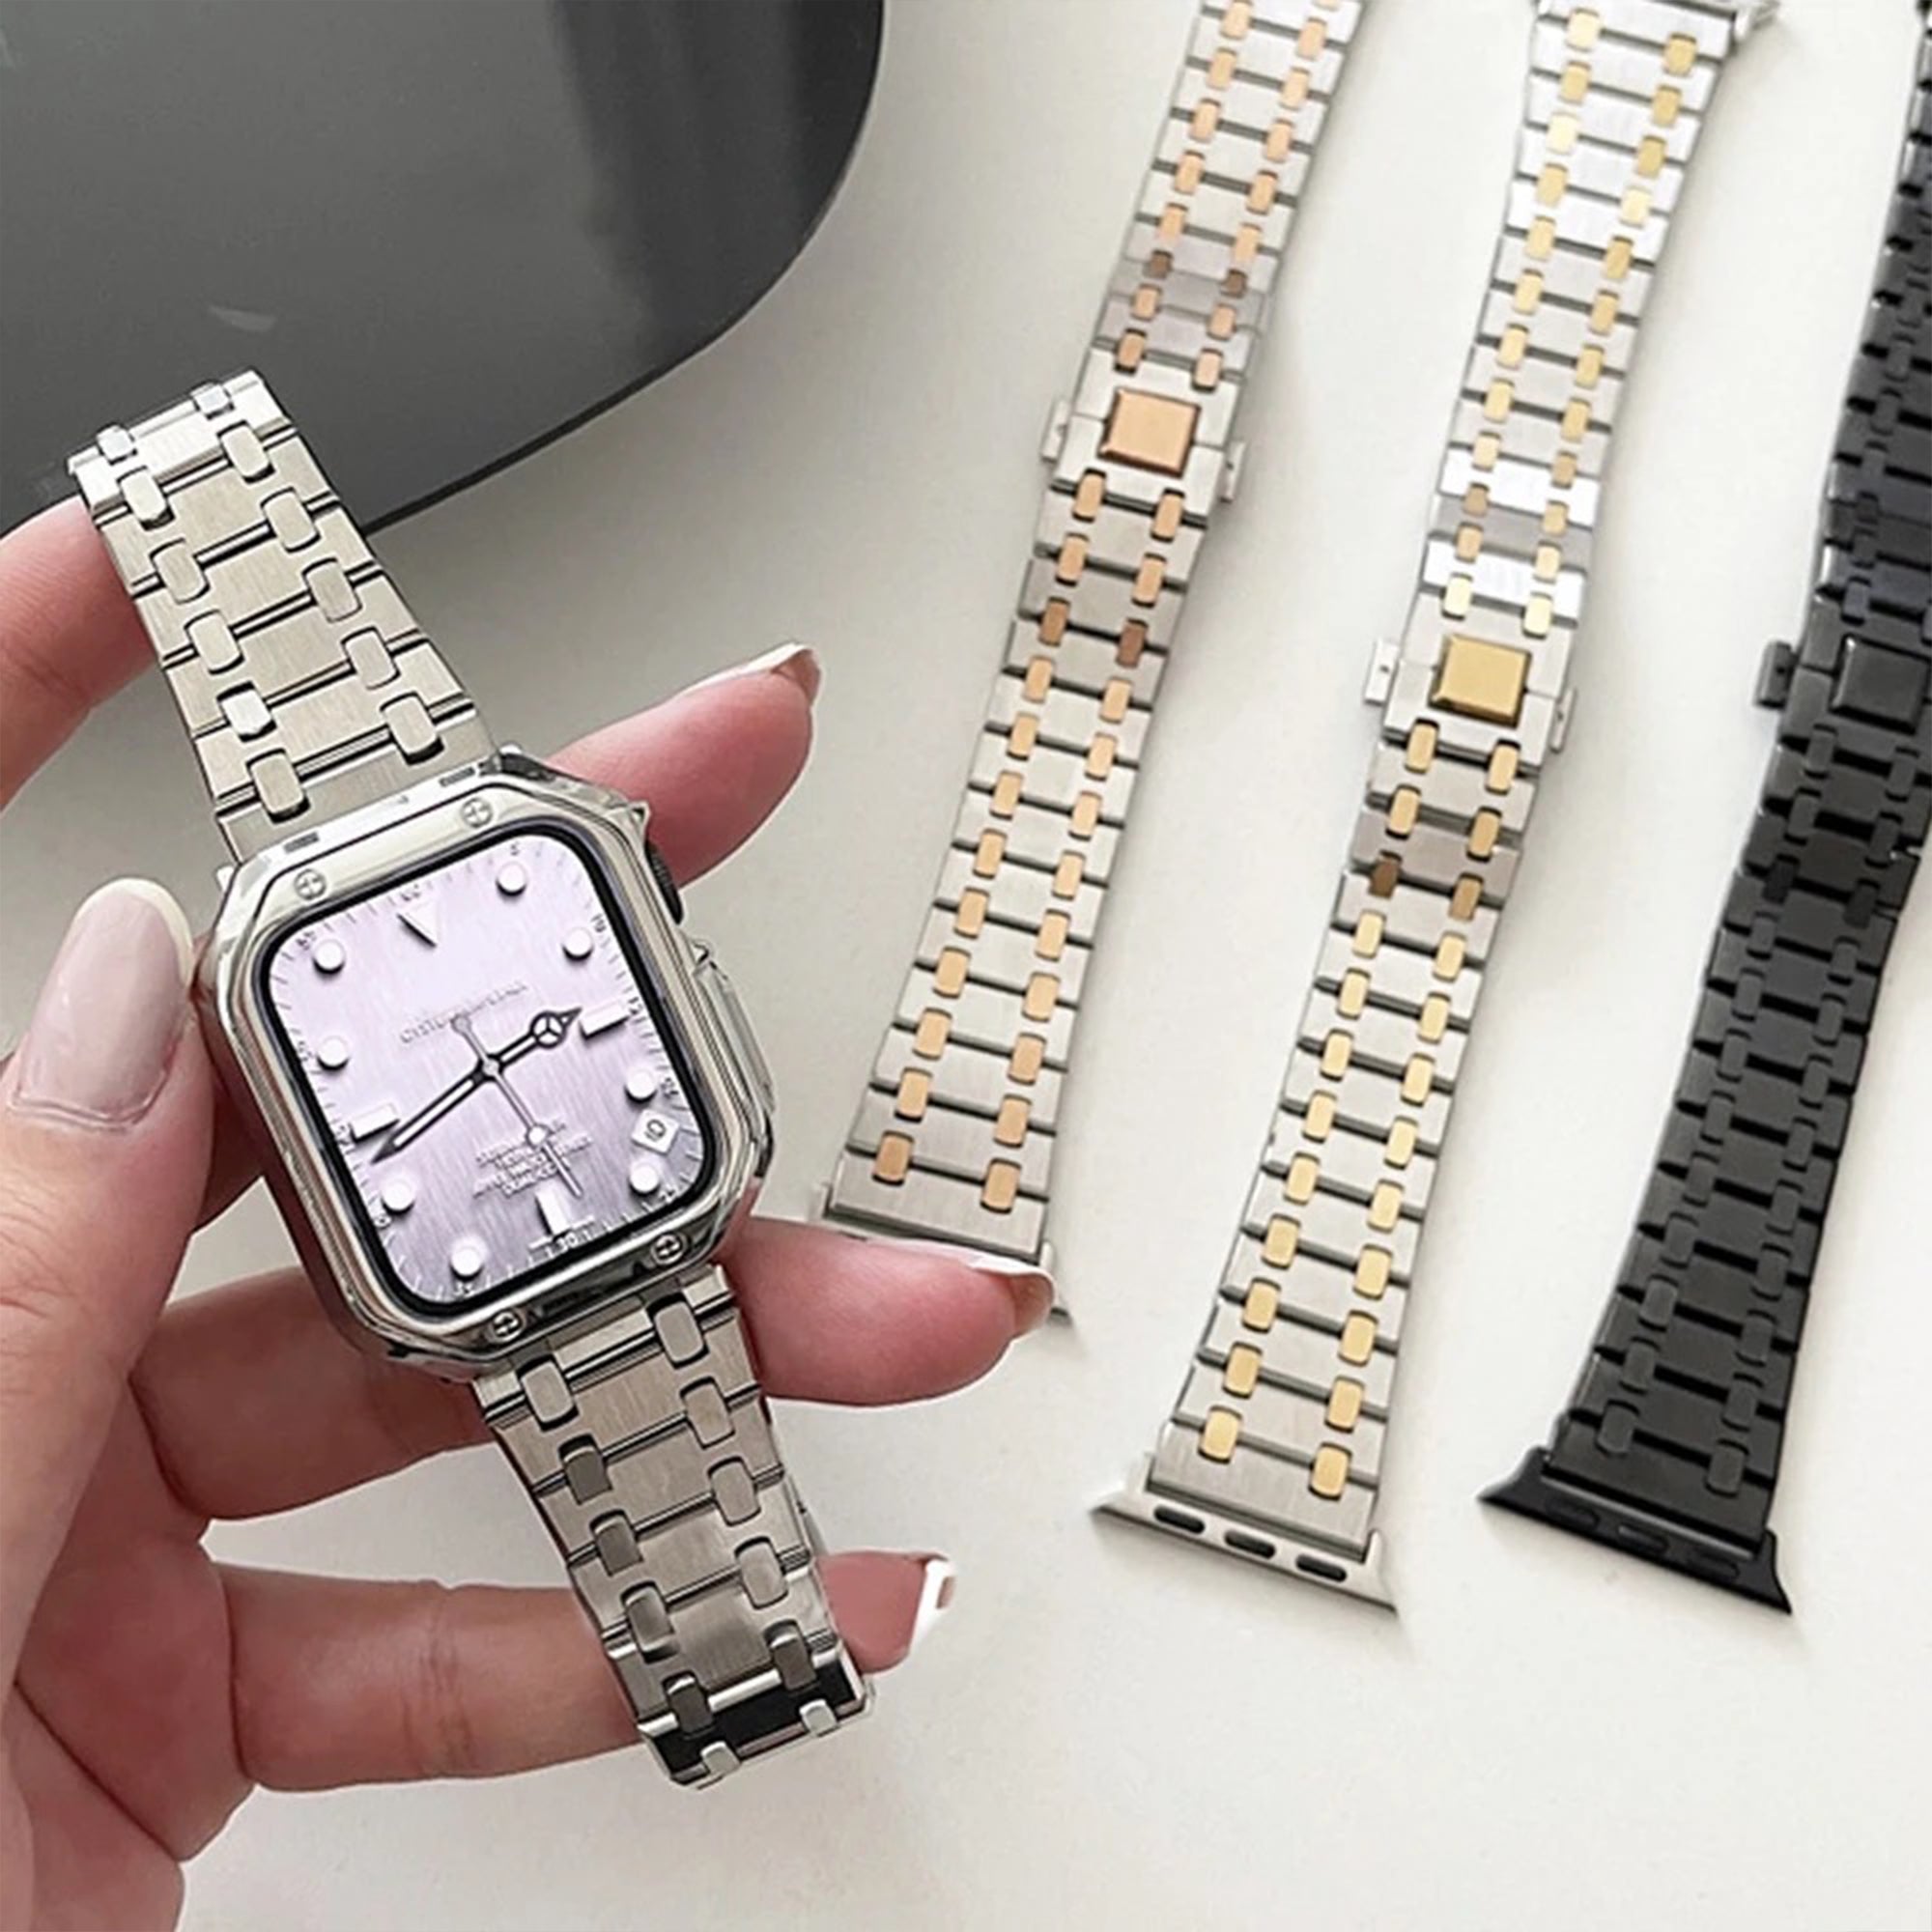 Von der Apple Watch AP inspiriertes Armband – Silber